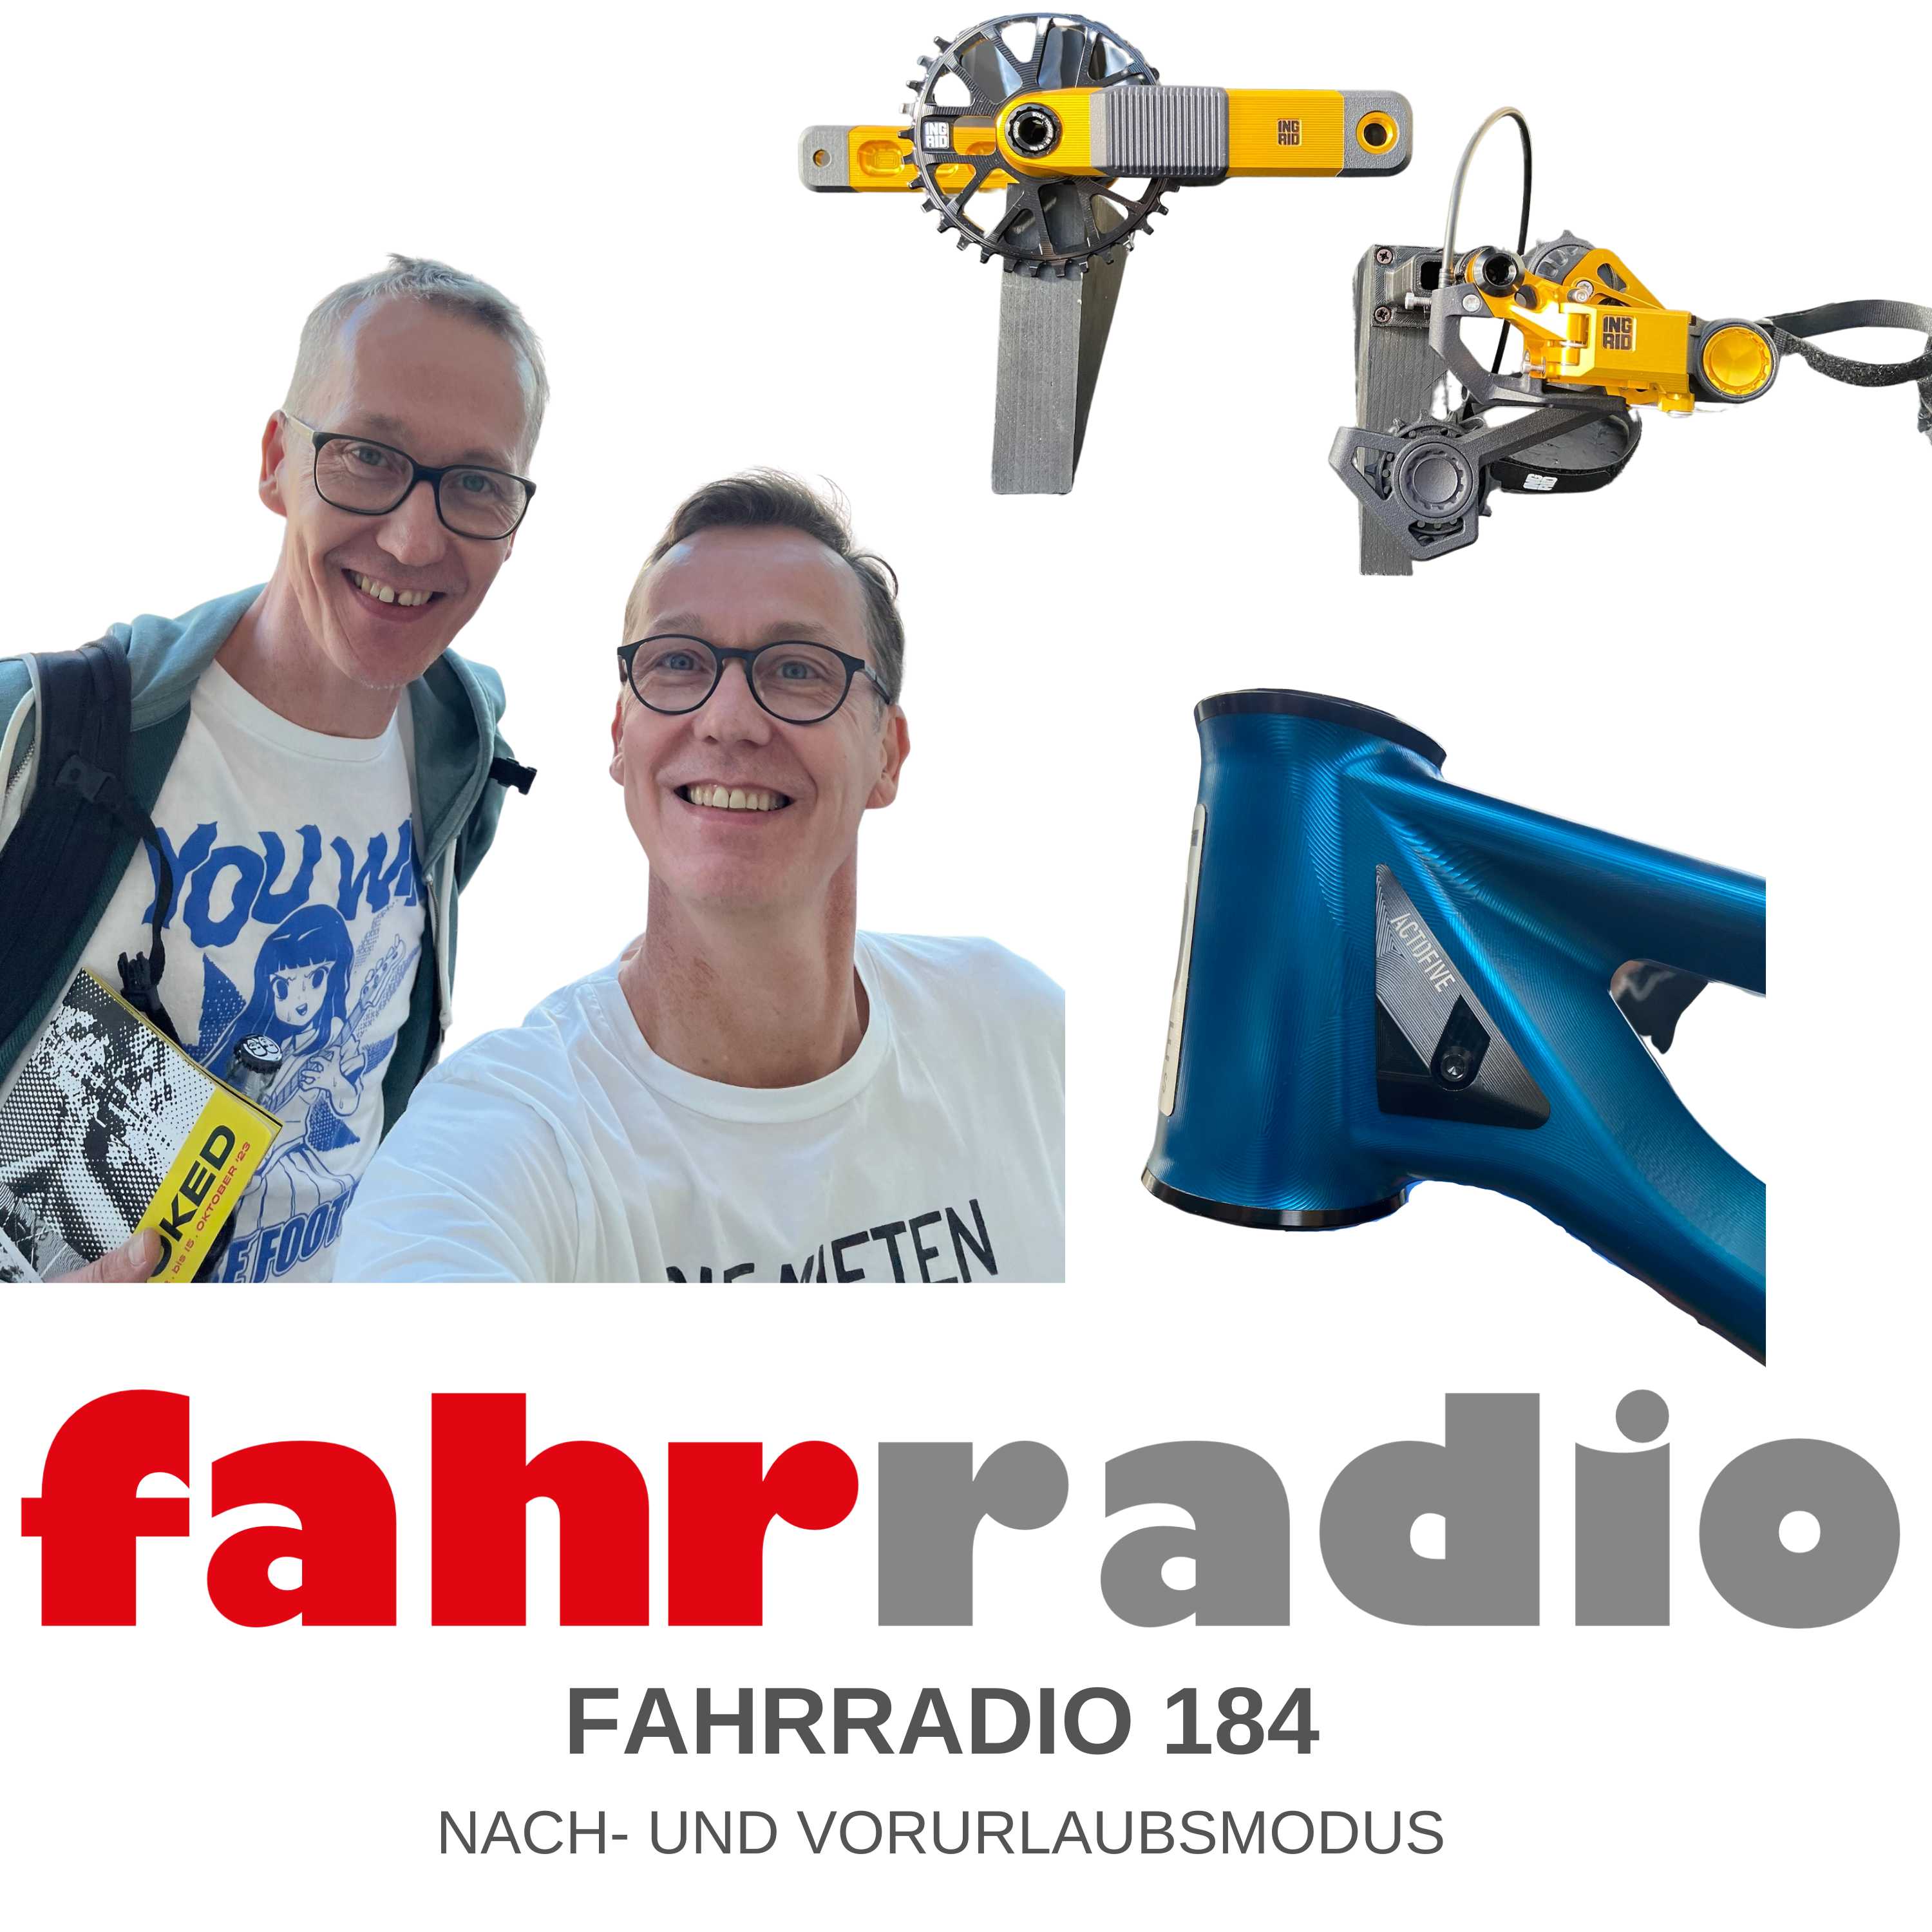 Handgemacht in Dresden - 187 - Fahrradio - Podcast